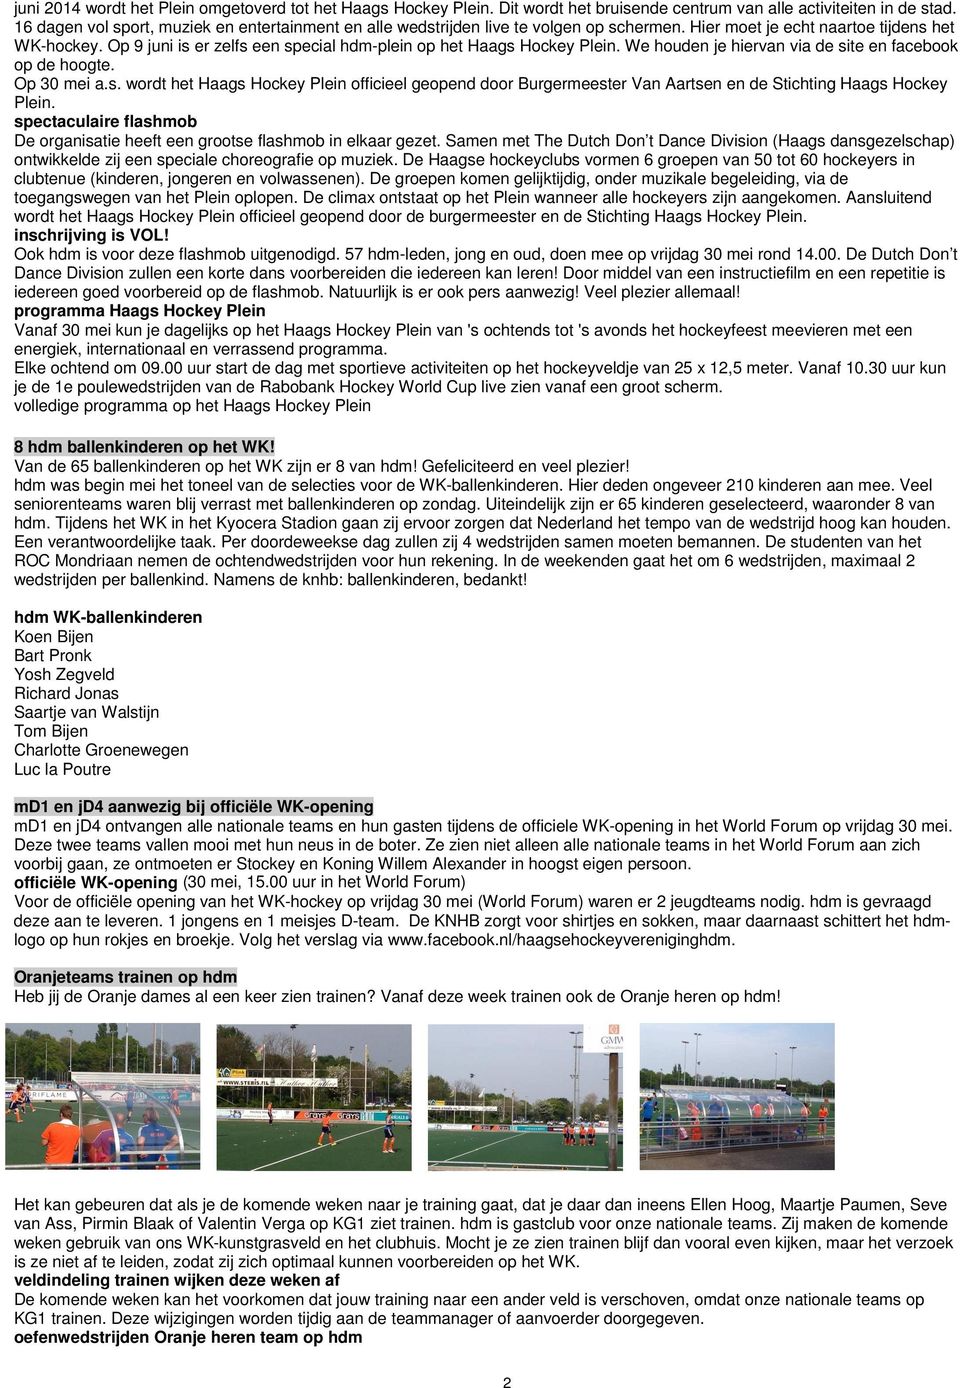 Op 9 juni is er zelfs een special hdm-plein op het Haags Hockey Plein. We houden je hiervan via de site en facebook op de hoogte. Op 30 mei a.s. wordt het Haags Hockey Plein officieel geopend door Burgermeester Van Aartsen en de Stichting Haags Hockey Plein.